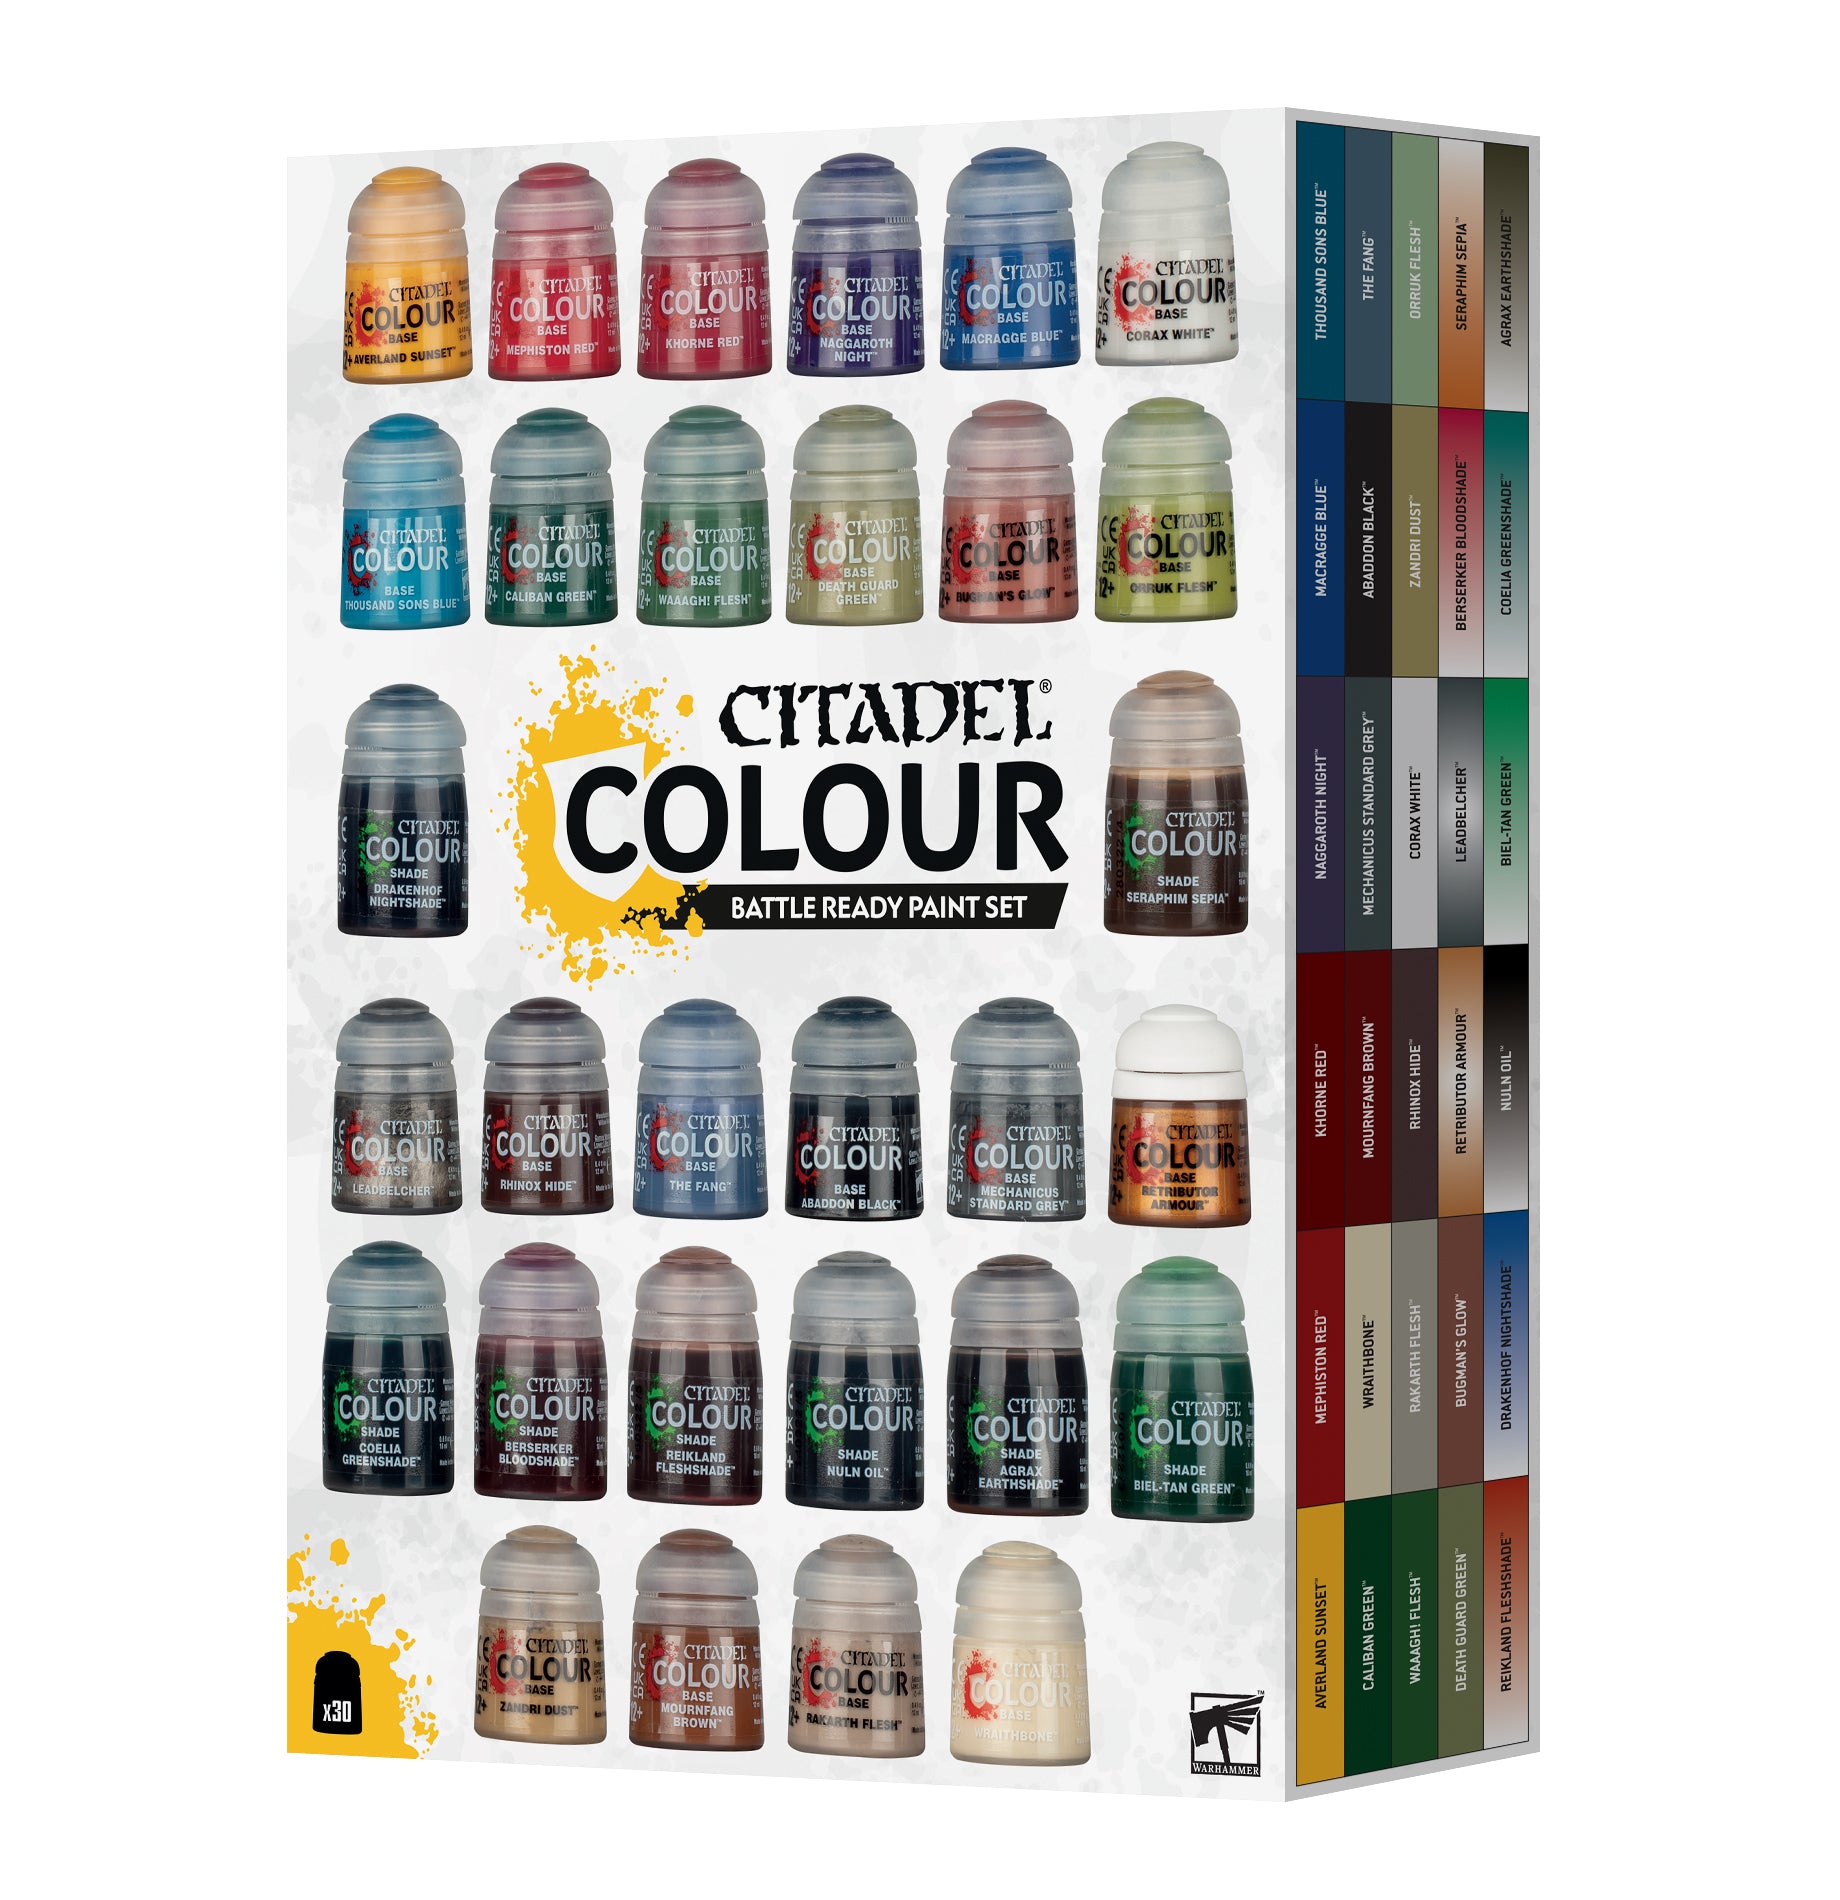 Citadel Colour: Battle Ready Paint Set | Jack's On Queen